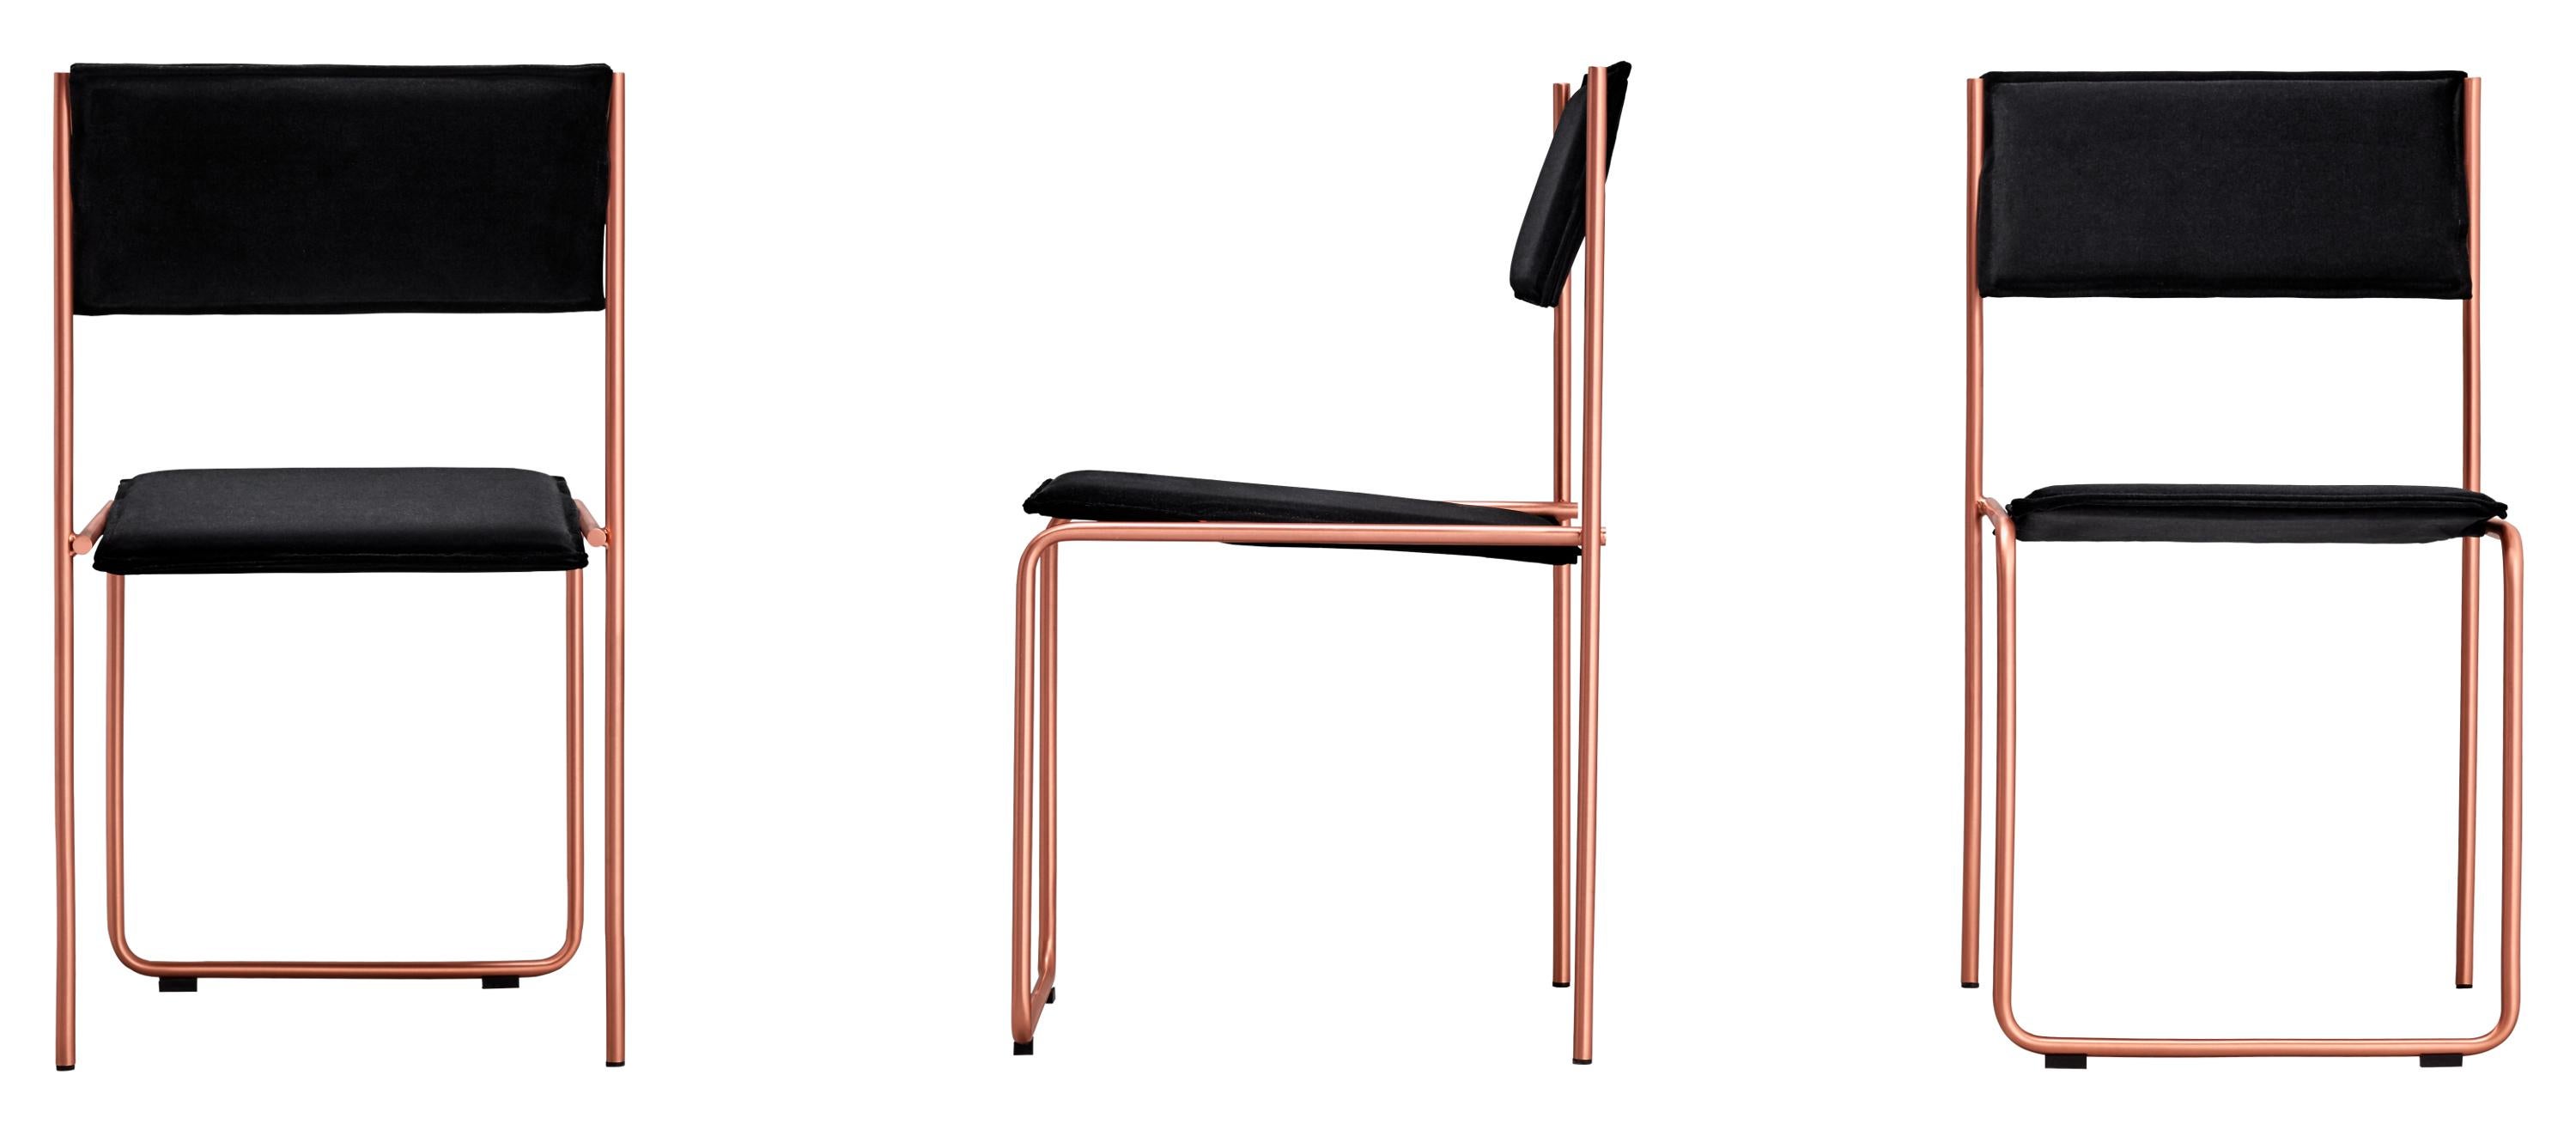 Trampolín Chair, Black & Copper by Cuatro Cuatros 1